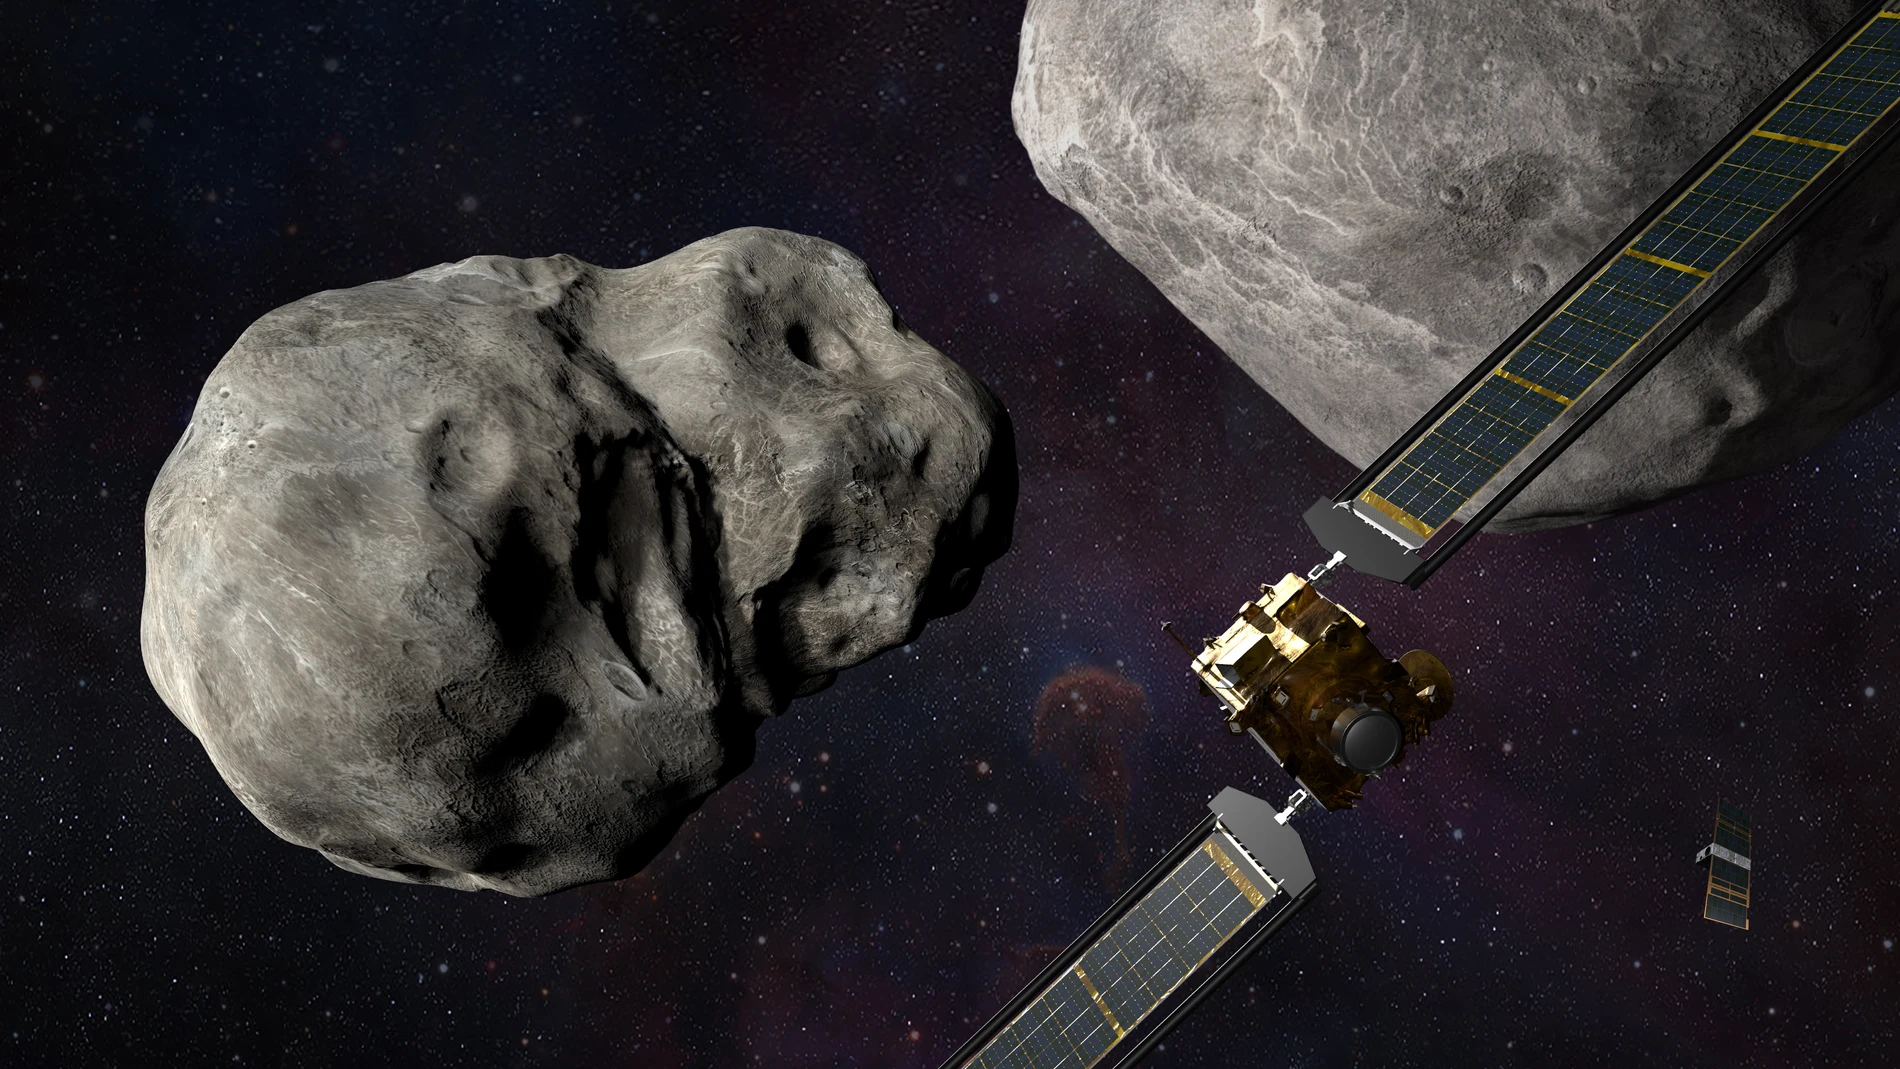 Una imagen sin fecha facilitada por la Administración Nacional de la Aeronáutica y del Espacio (NASA) muestra una ilustración de la nave espacial de la NASA Double Asteroid Redirection Test (DART) antes del impacto en el sistema de asteroides binarios Didymos (publicada el 26 de septiembre de 2022). La NASA anunció que DART colisionará intencionadamente con su asteroide objetivo -que no supone ninguna amenaza para la Tierra- a las 19:14 h EDT del 26 de septiembre de 2022, como la "primera misión del mundo para probar la tecnología de defensa de la Tierra contra posibles peligros de asteroides o cometas". DART proporcionará datos importantes para ayudar a prepararse mejor para un asteroide que pueda suponer un peligro de impacto contra la Tierra, añadió.EFE/EPA/NASA/JOHNS HOPKINS APL/STEVE GRIBBEN